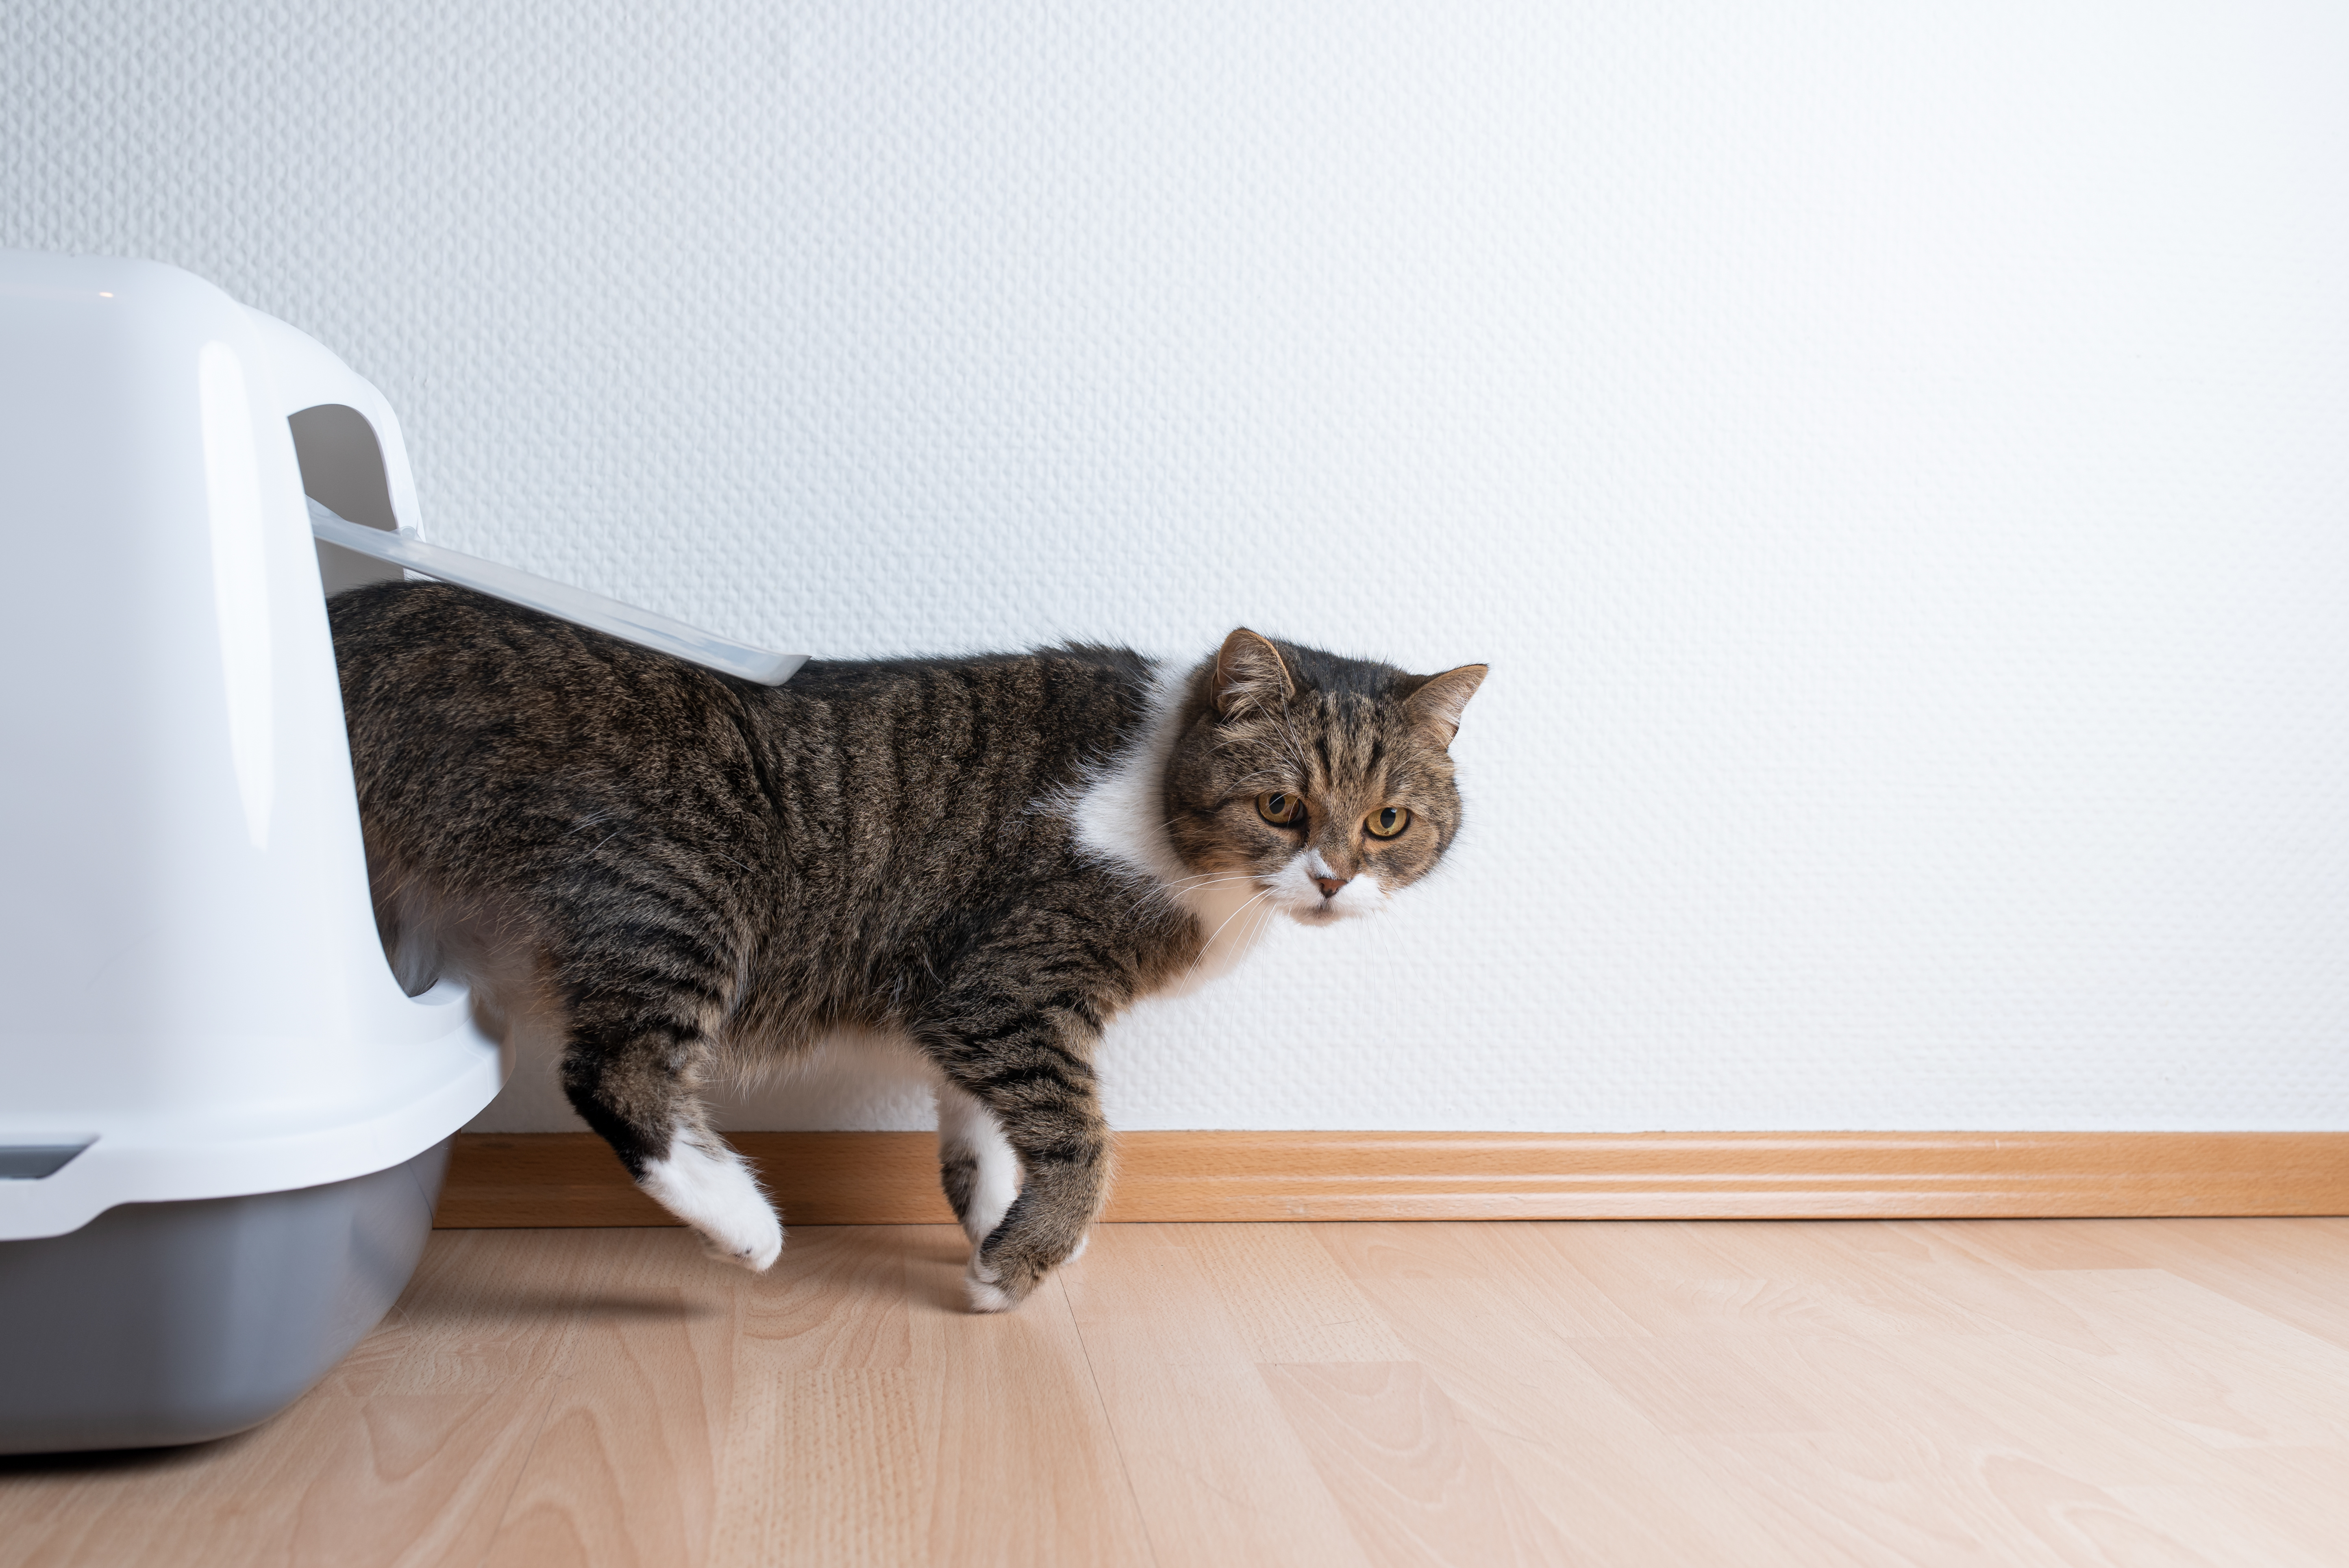 Blærebetændelse (cystitis) hos katte zooplus kattemagasinet